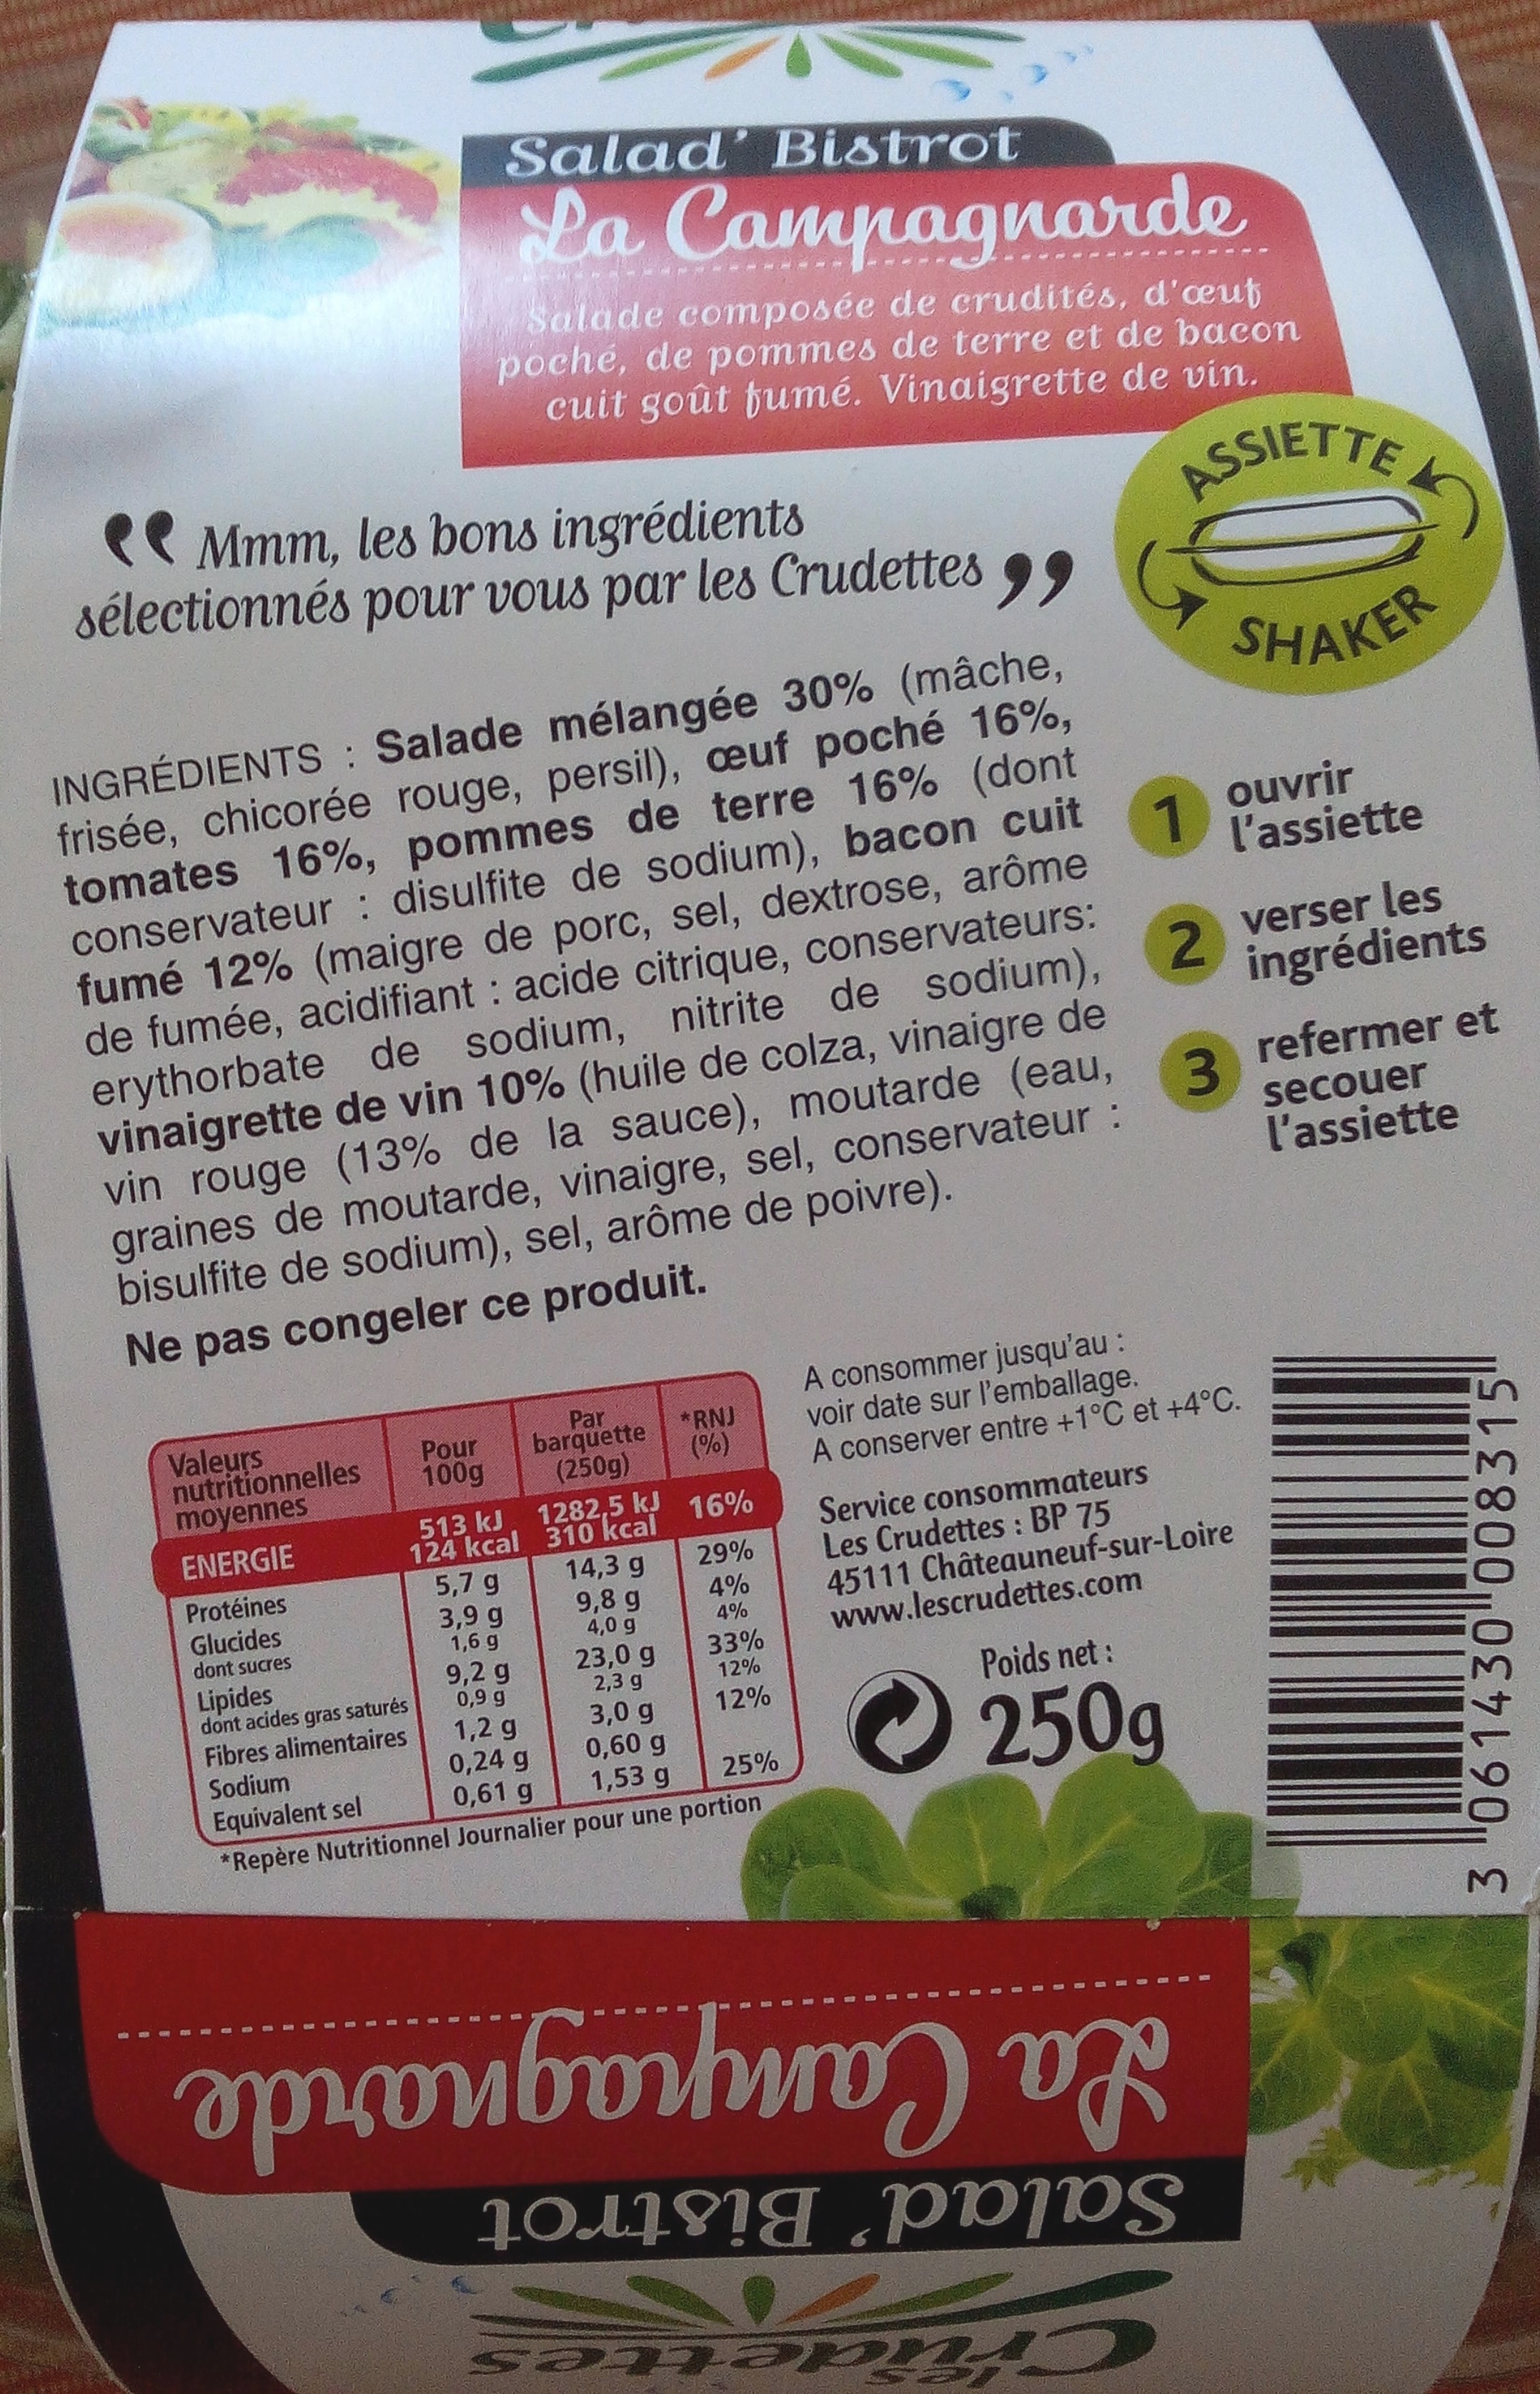 Salad'bistrot la Campagnarde (Les Crudettes) - Näringsfakta - fr